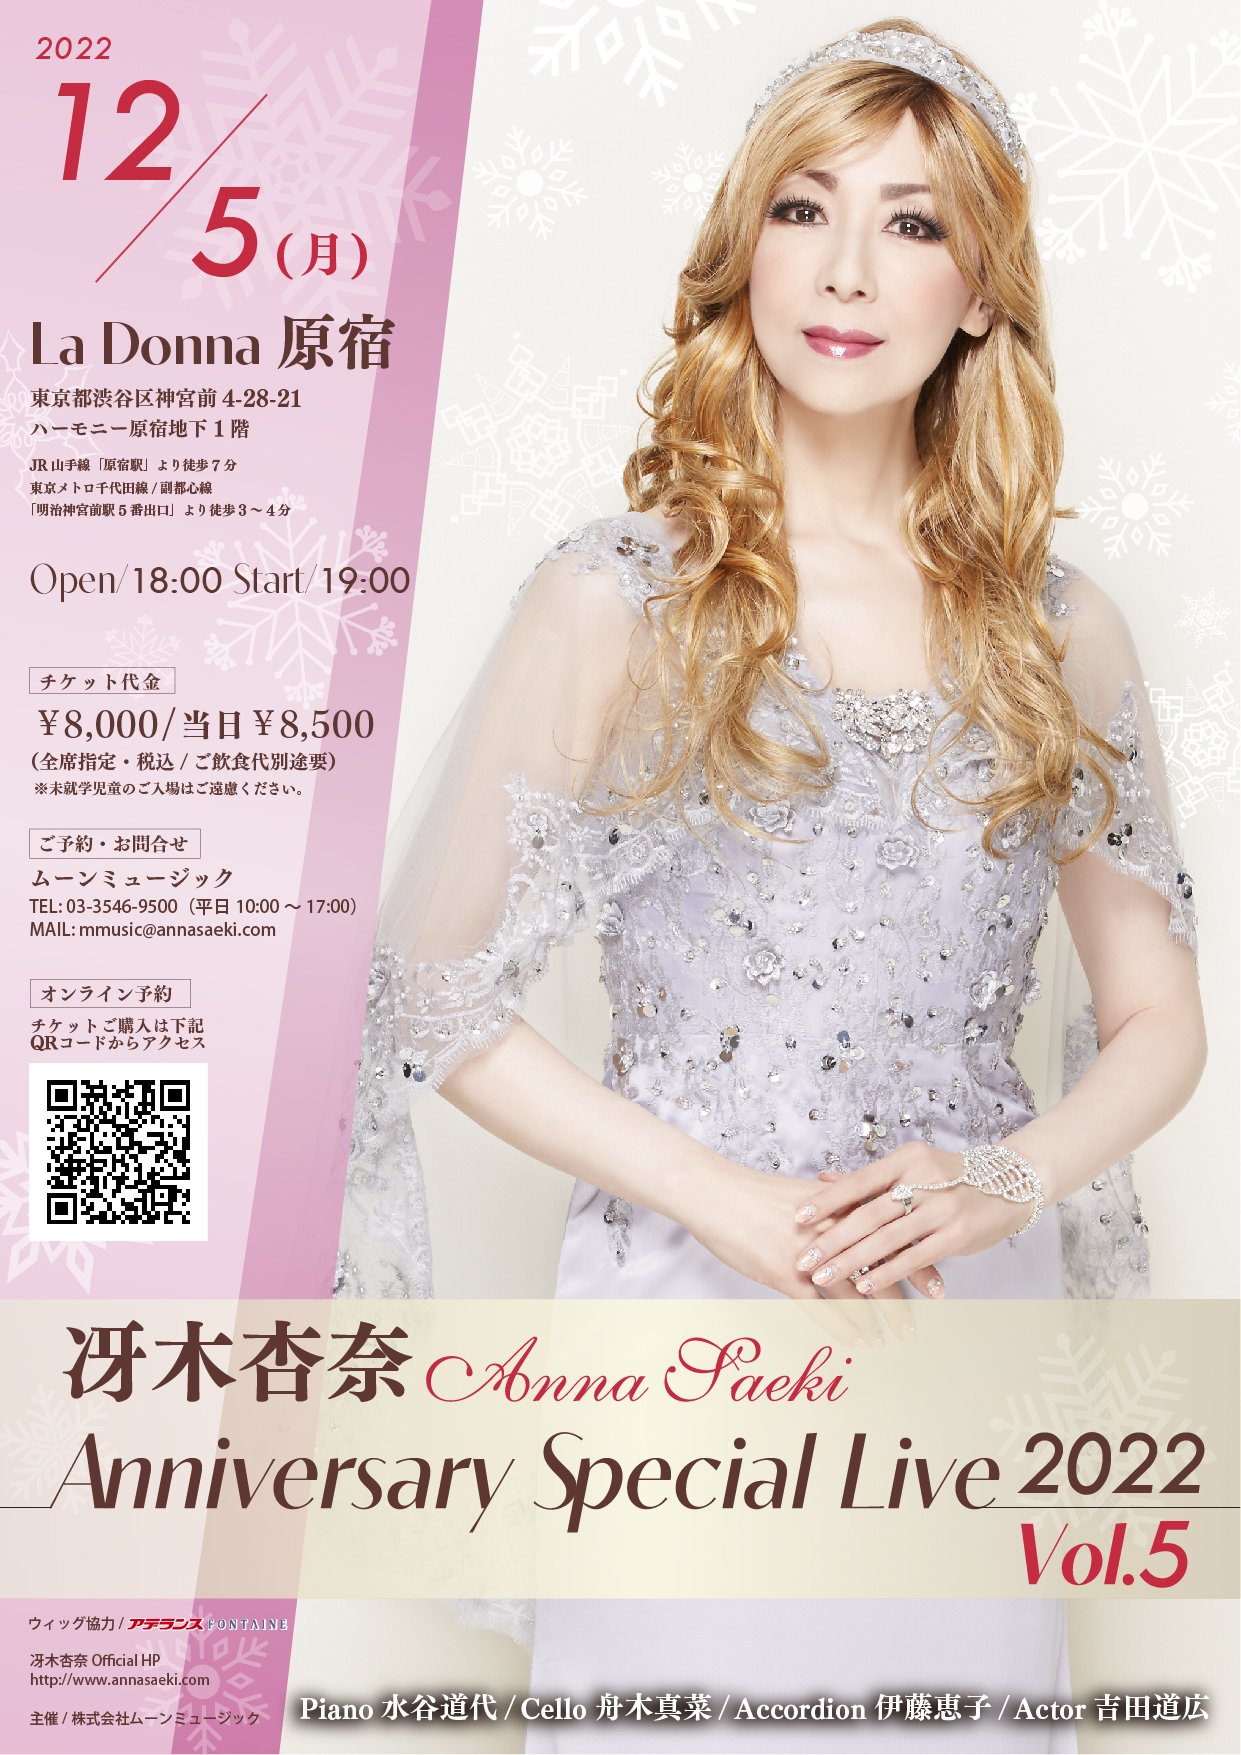 冴木杏奈Anniversary Special Live 2022 Vol.5